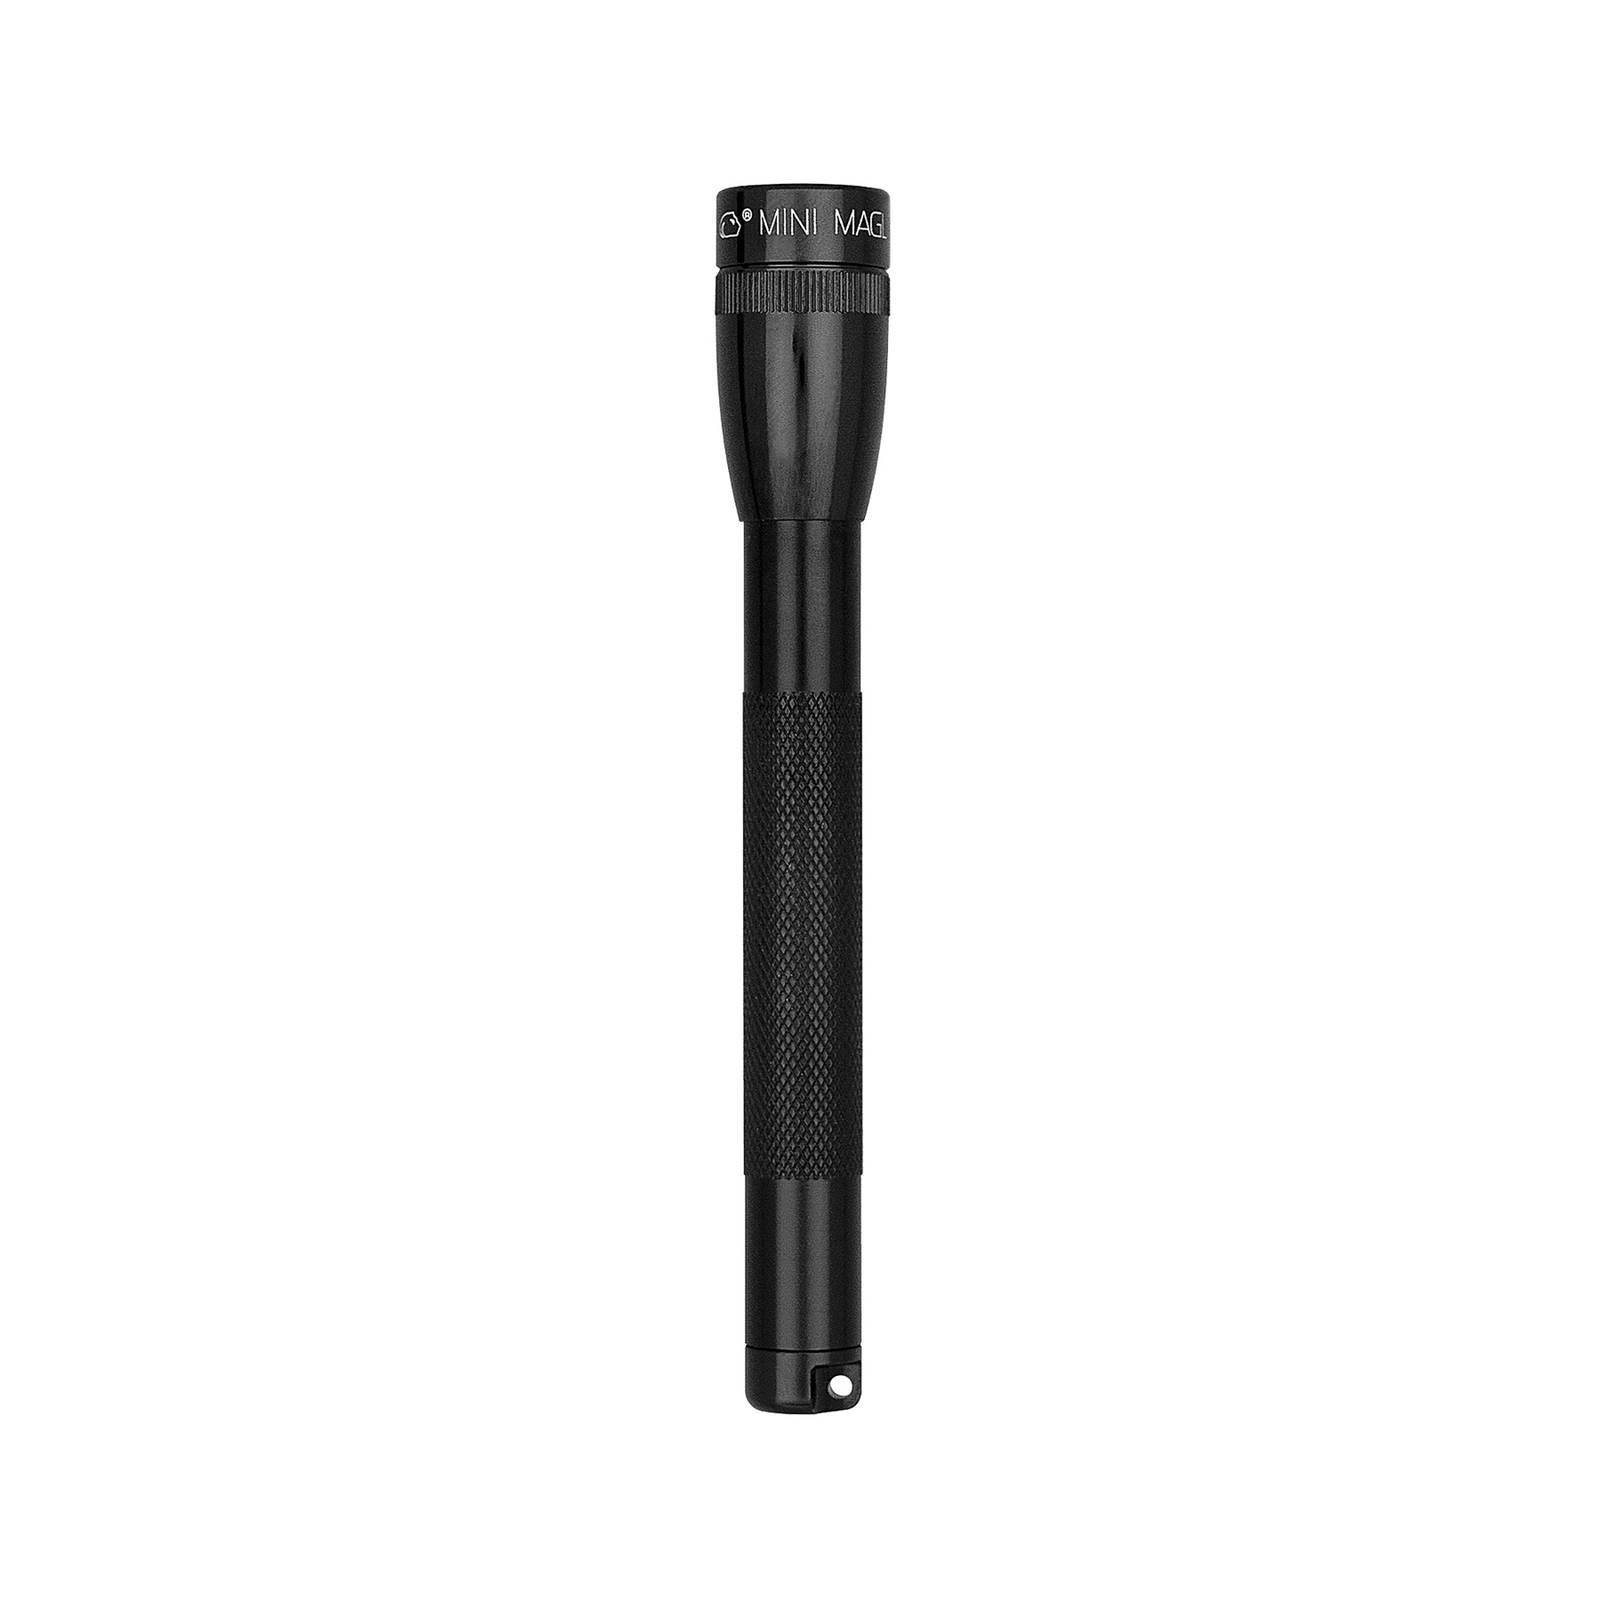 Maglite Xenon torch Mini, 2-Cell AAA, black